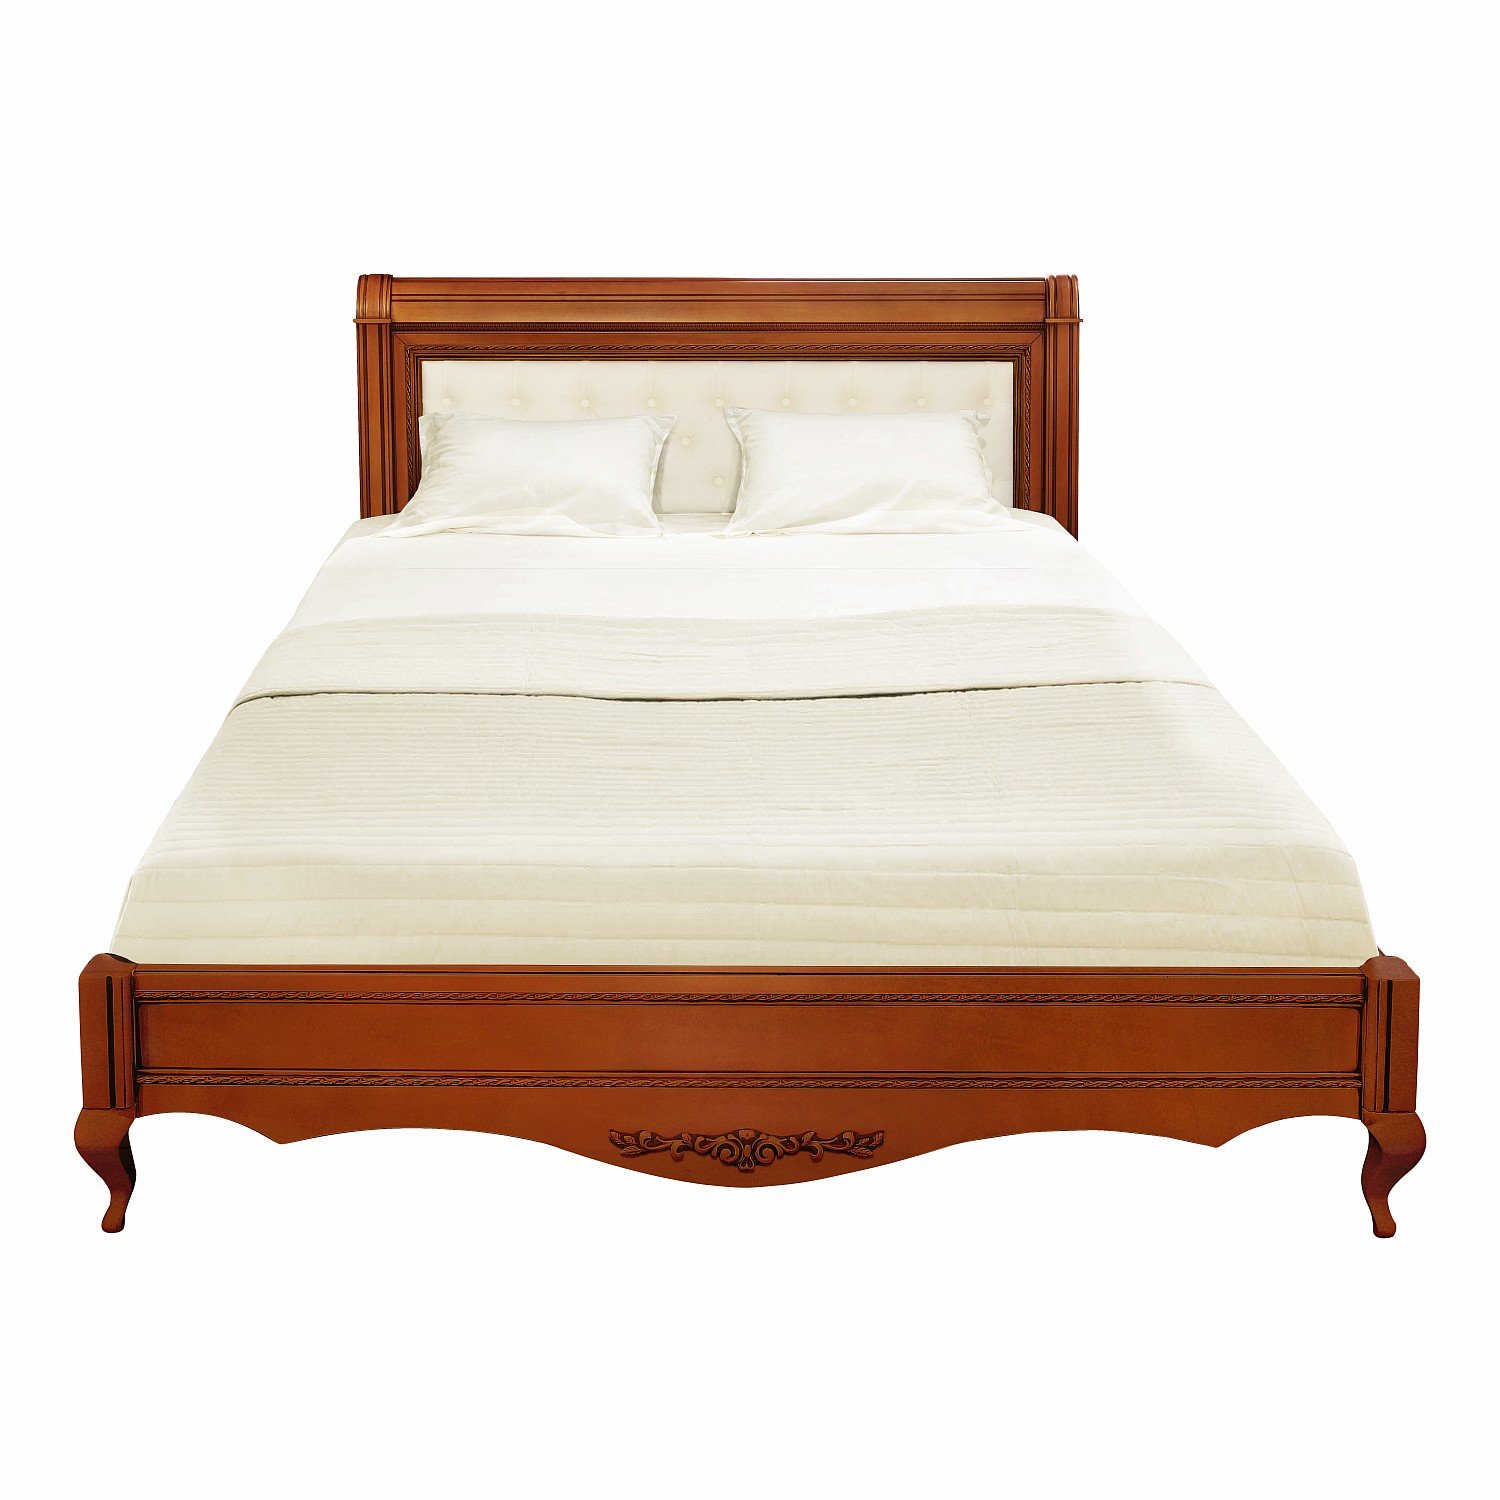 Кровать Timber Неаполь, двуспальная с мягким изголовьем 180x200 см, цвет: янтарь (Т-528/Y)Т-528